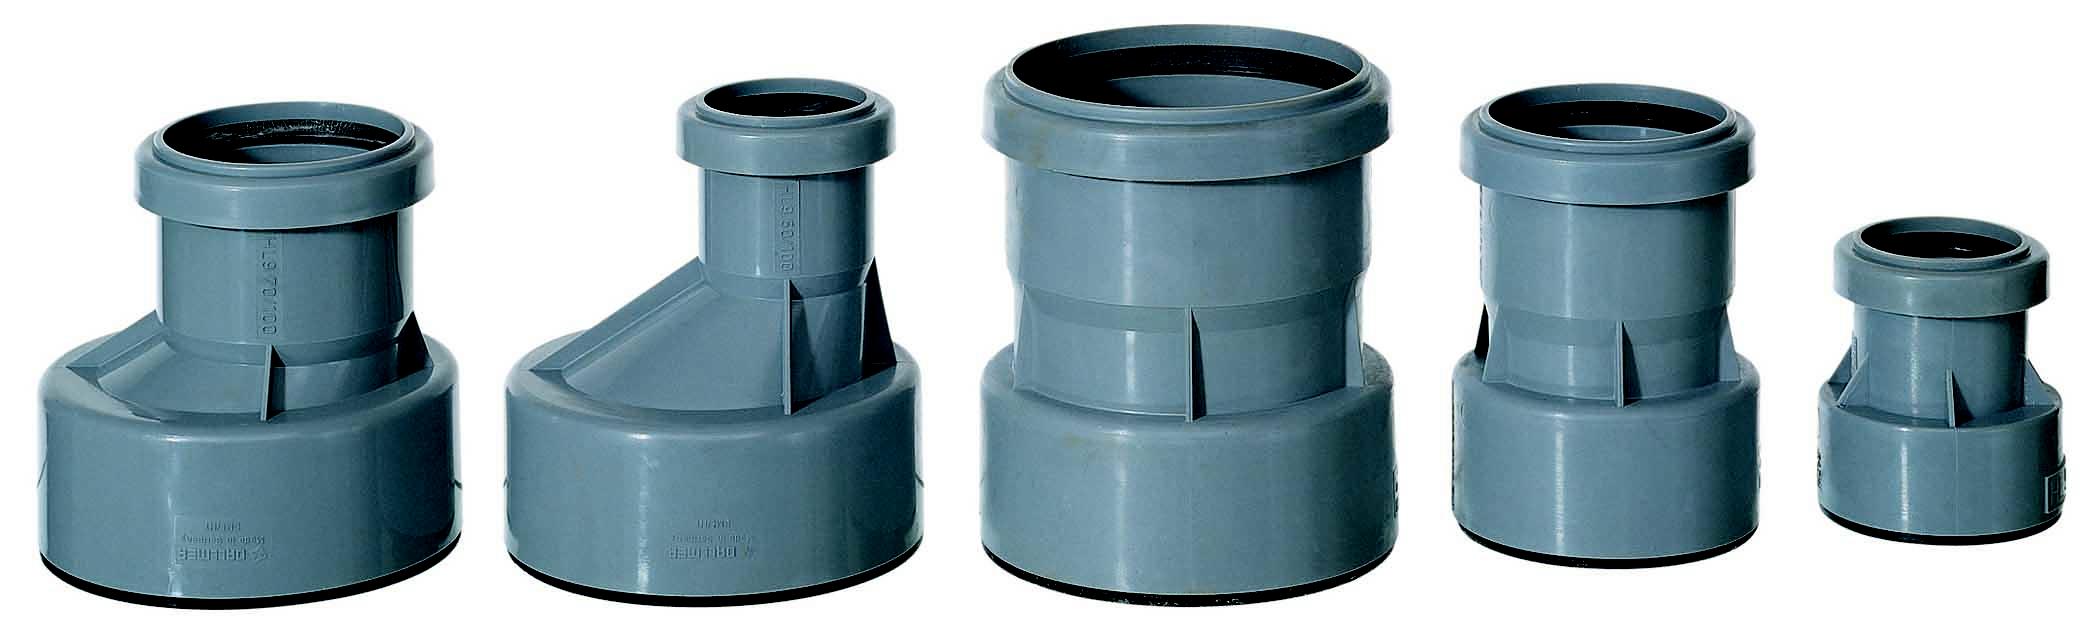 Сантехнические переходники для канализационных труб разного диаметра